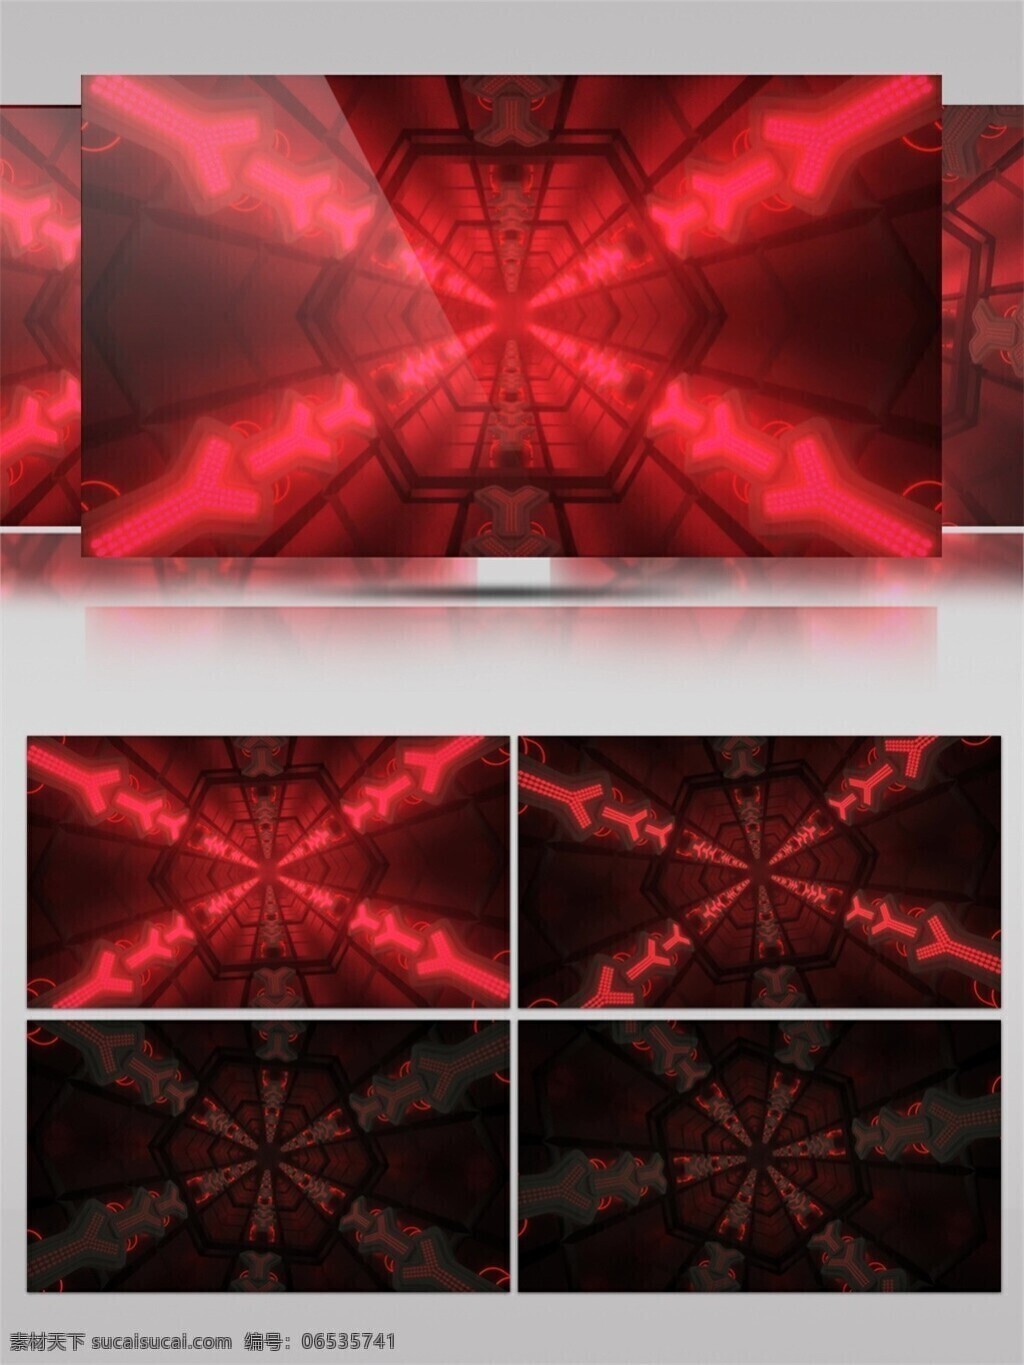 红色 发散 光束 视频 高清素材 光特效素材 激光 唯美素材